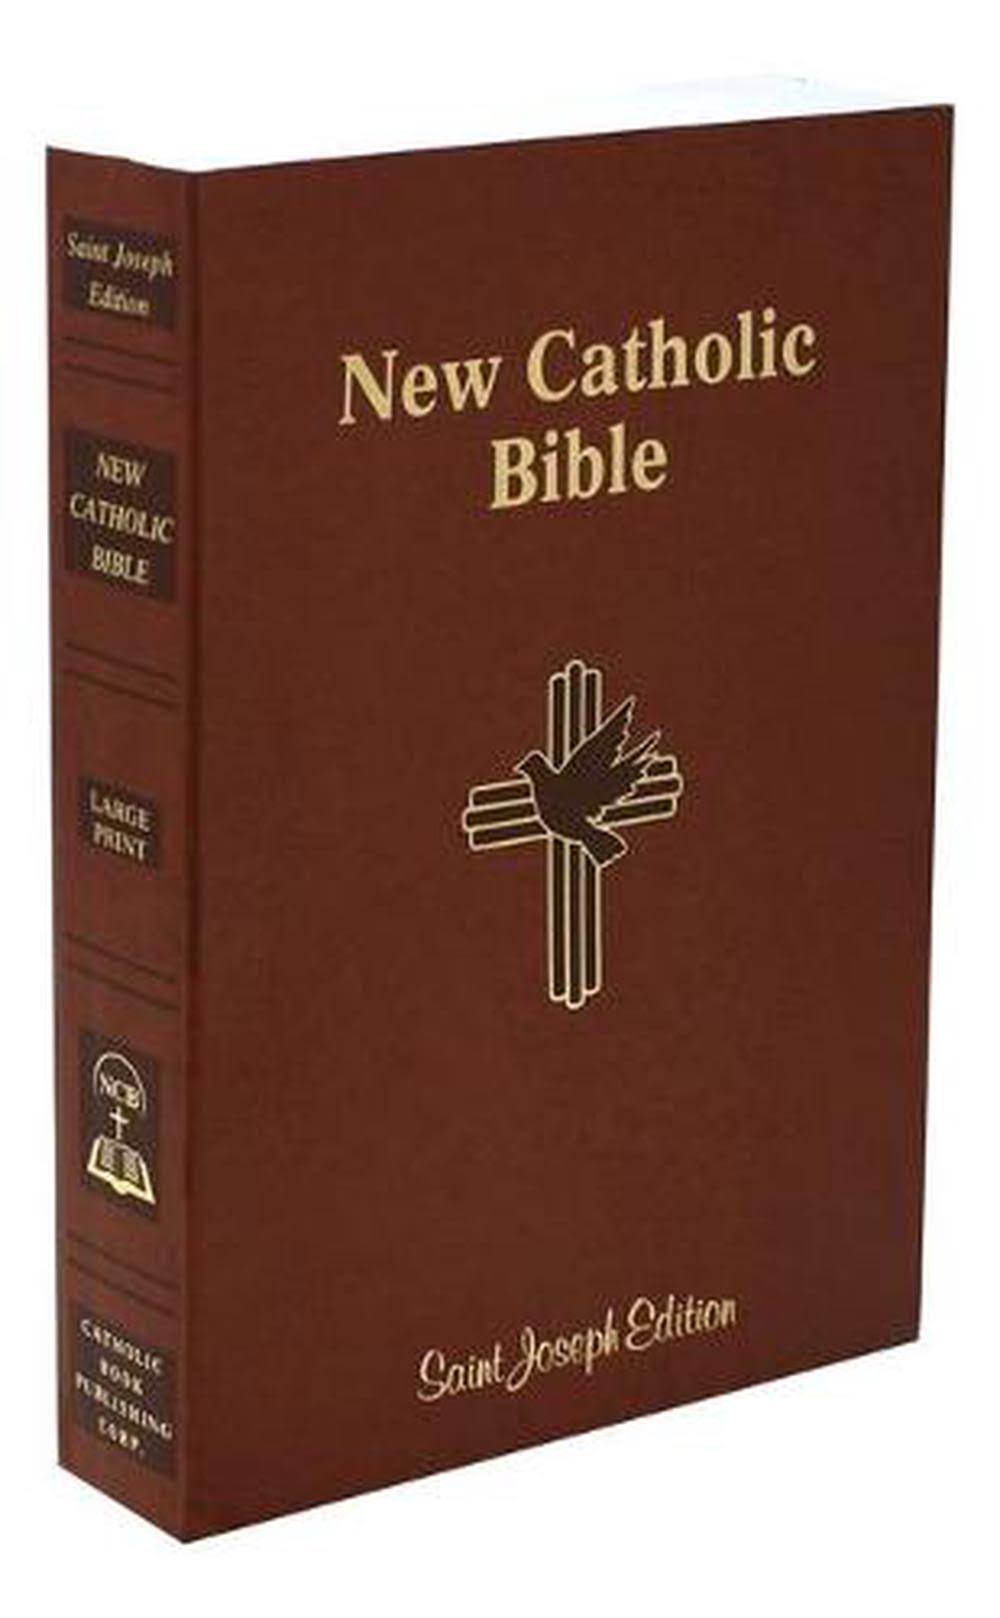 St. Joseph New Catholic Bible (Student Edition - Large Type)